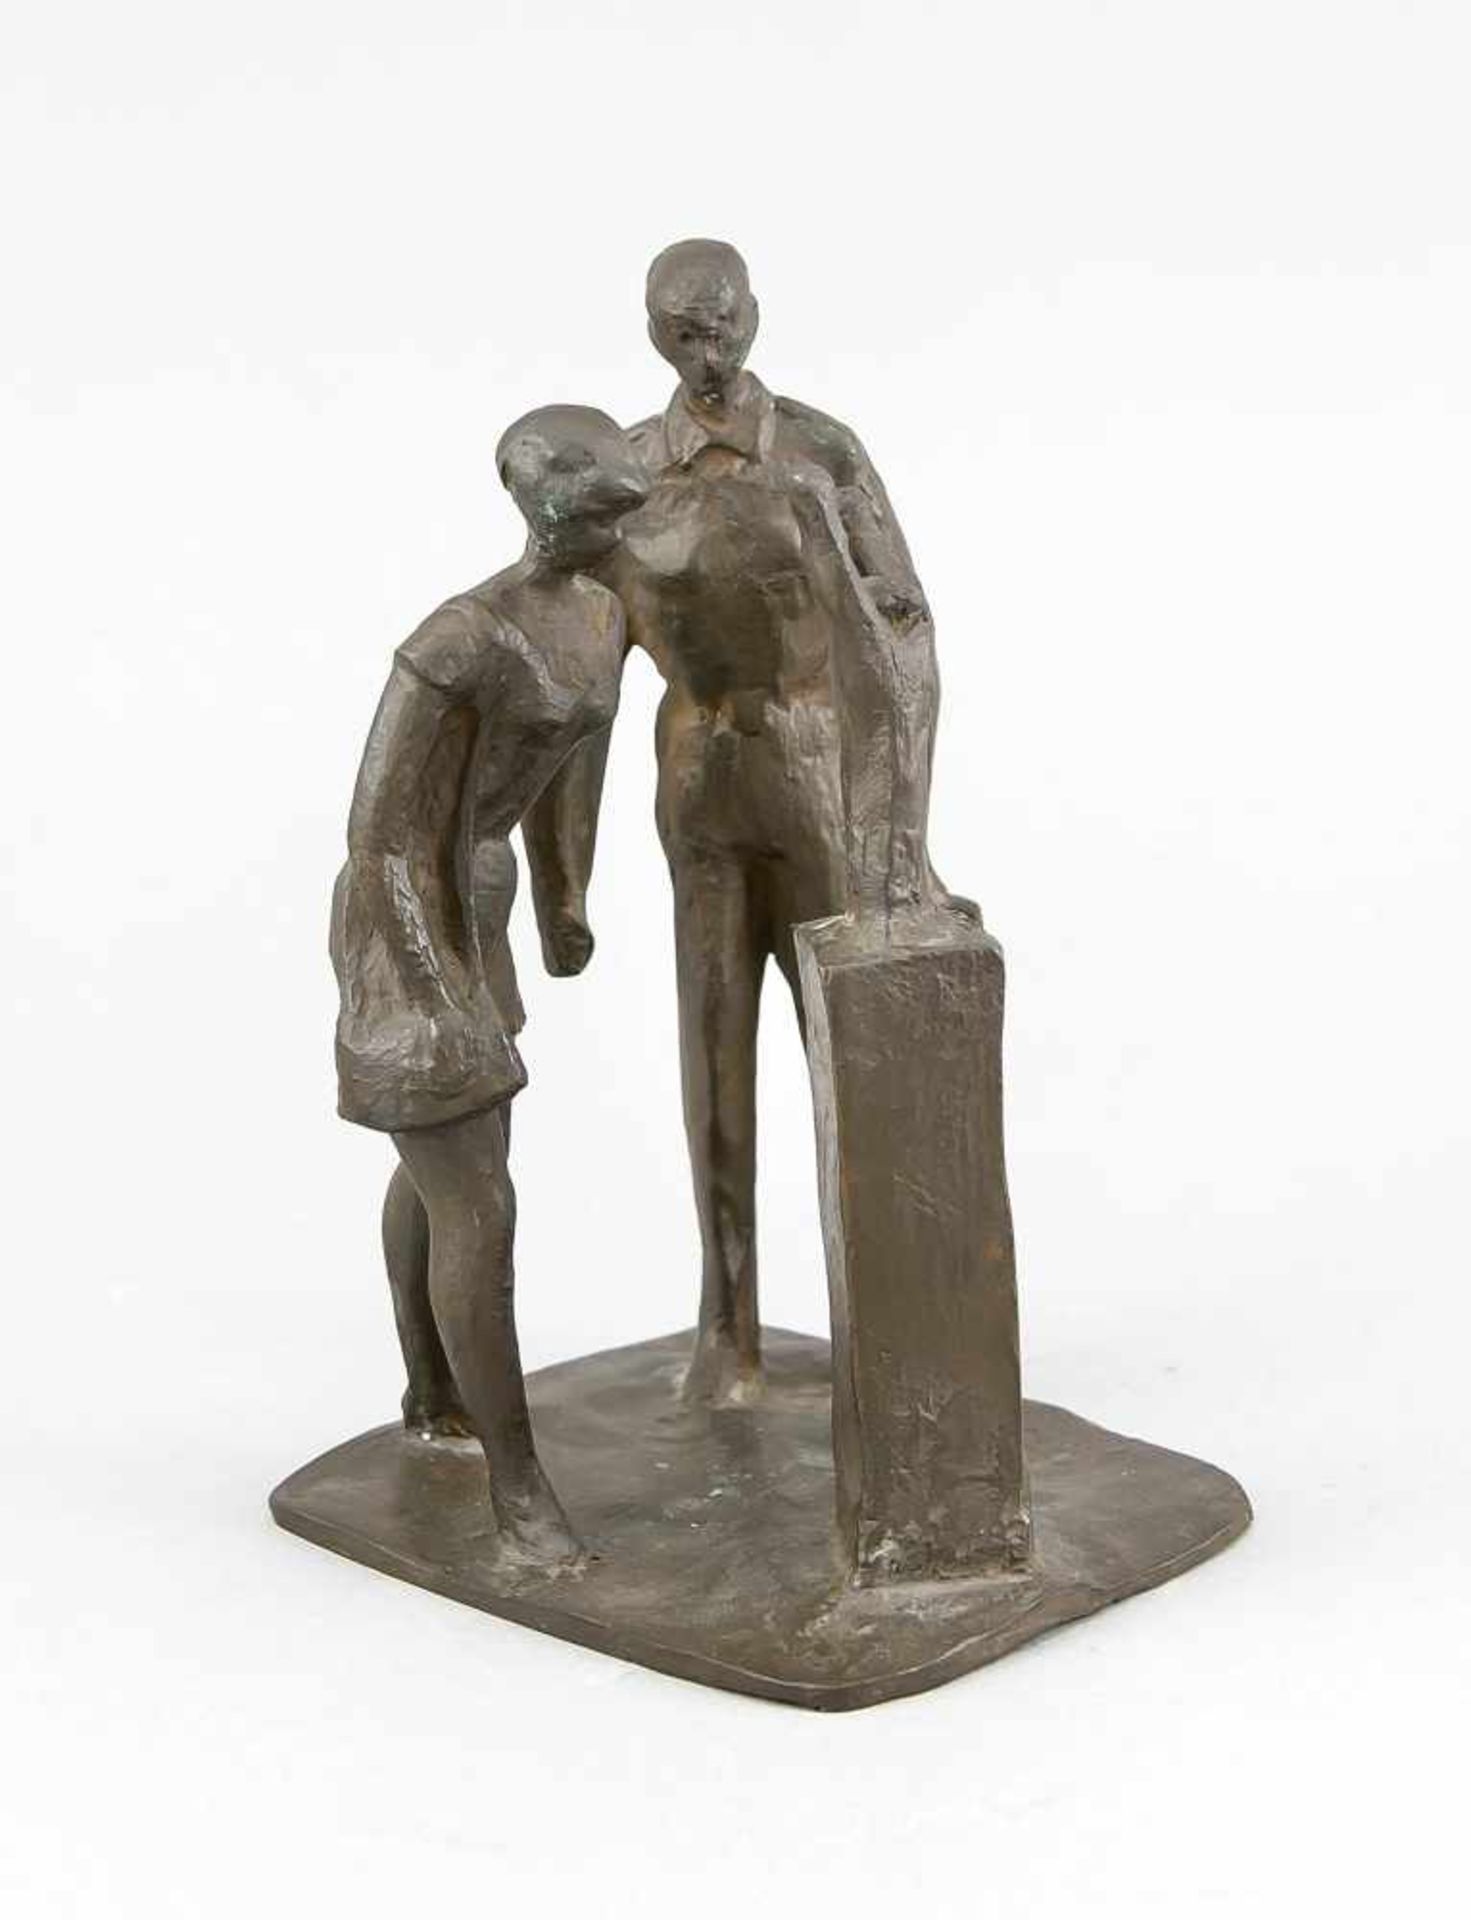 Manfred Welzel (1926 - 2018), "Im Museum", junges Paar beim Betrachten einer Skulpturmit erhobenen